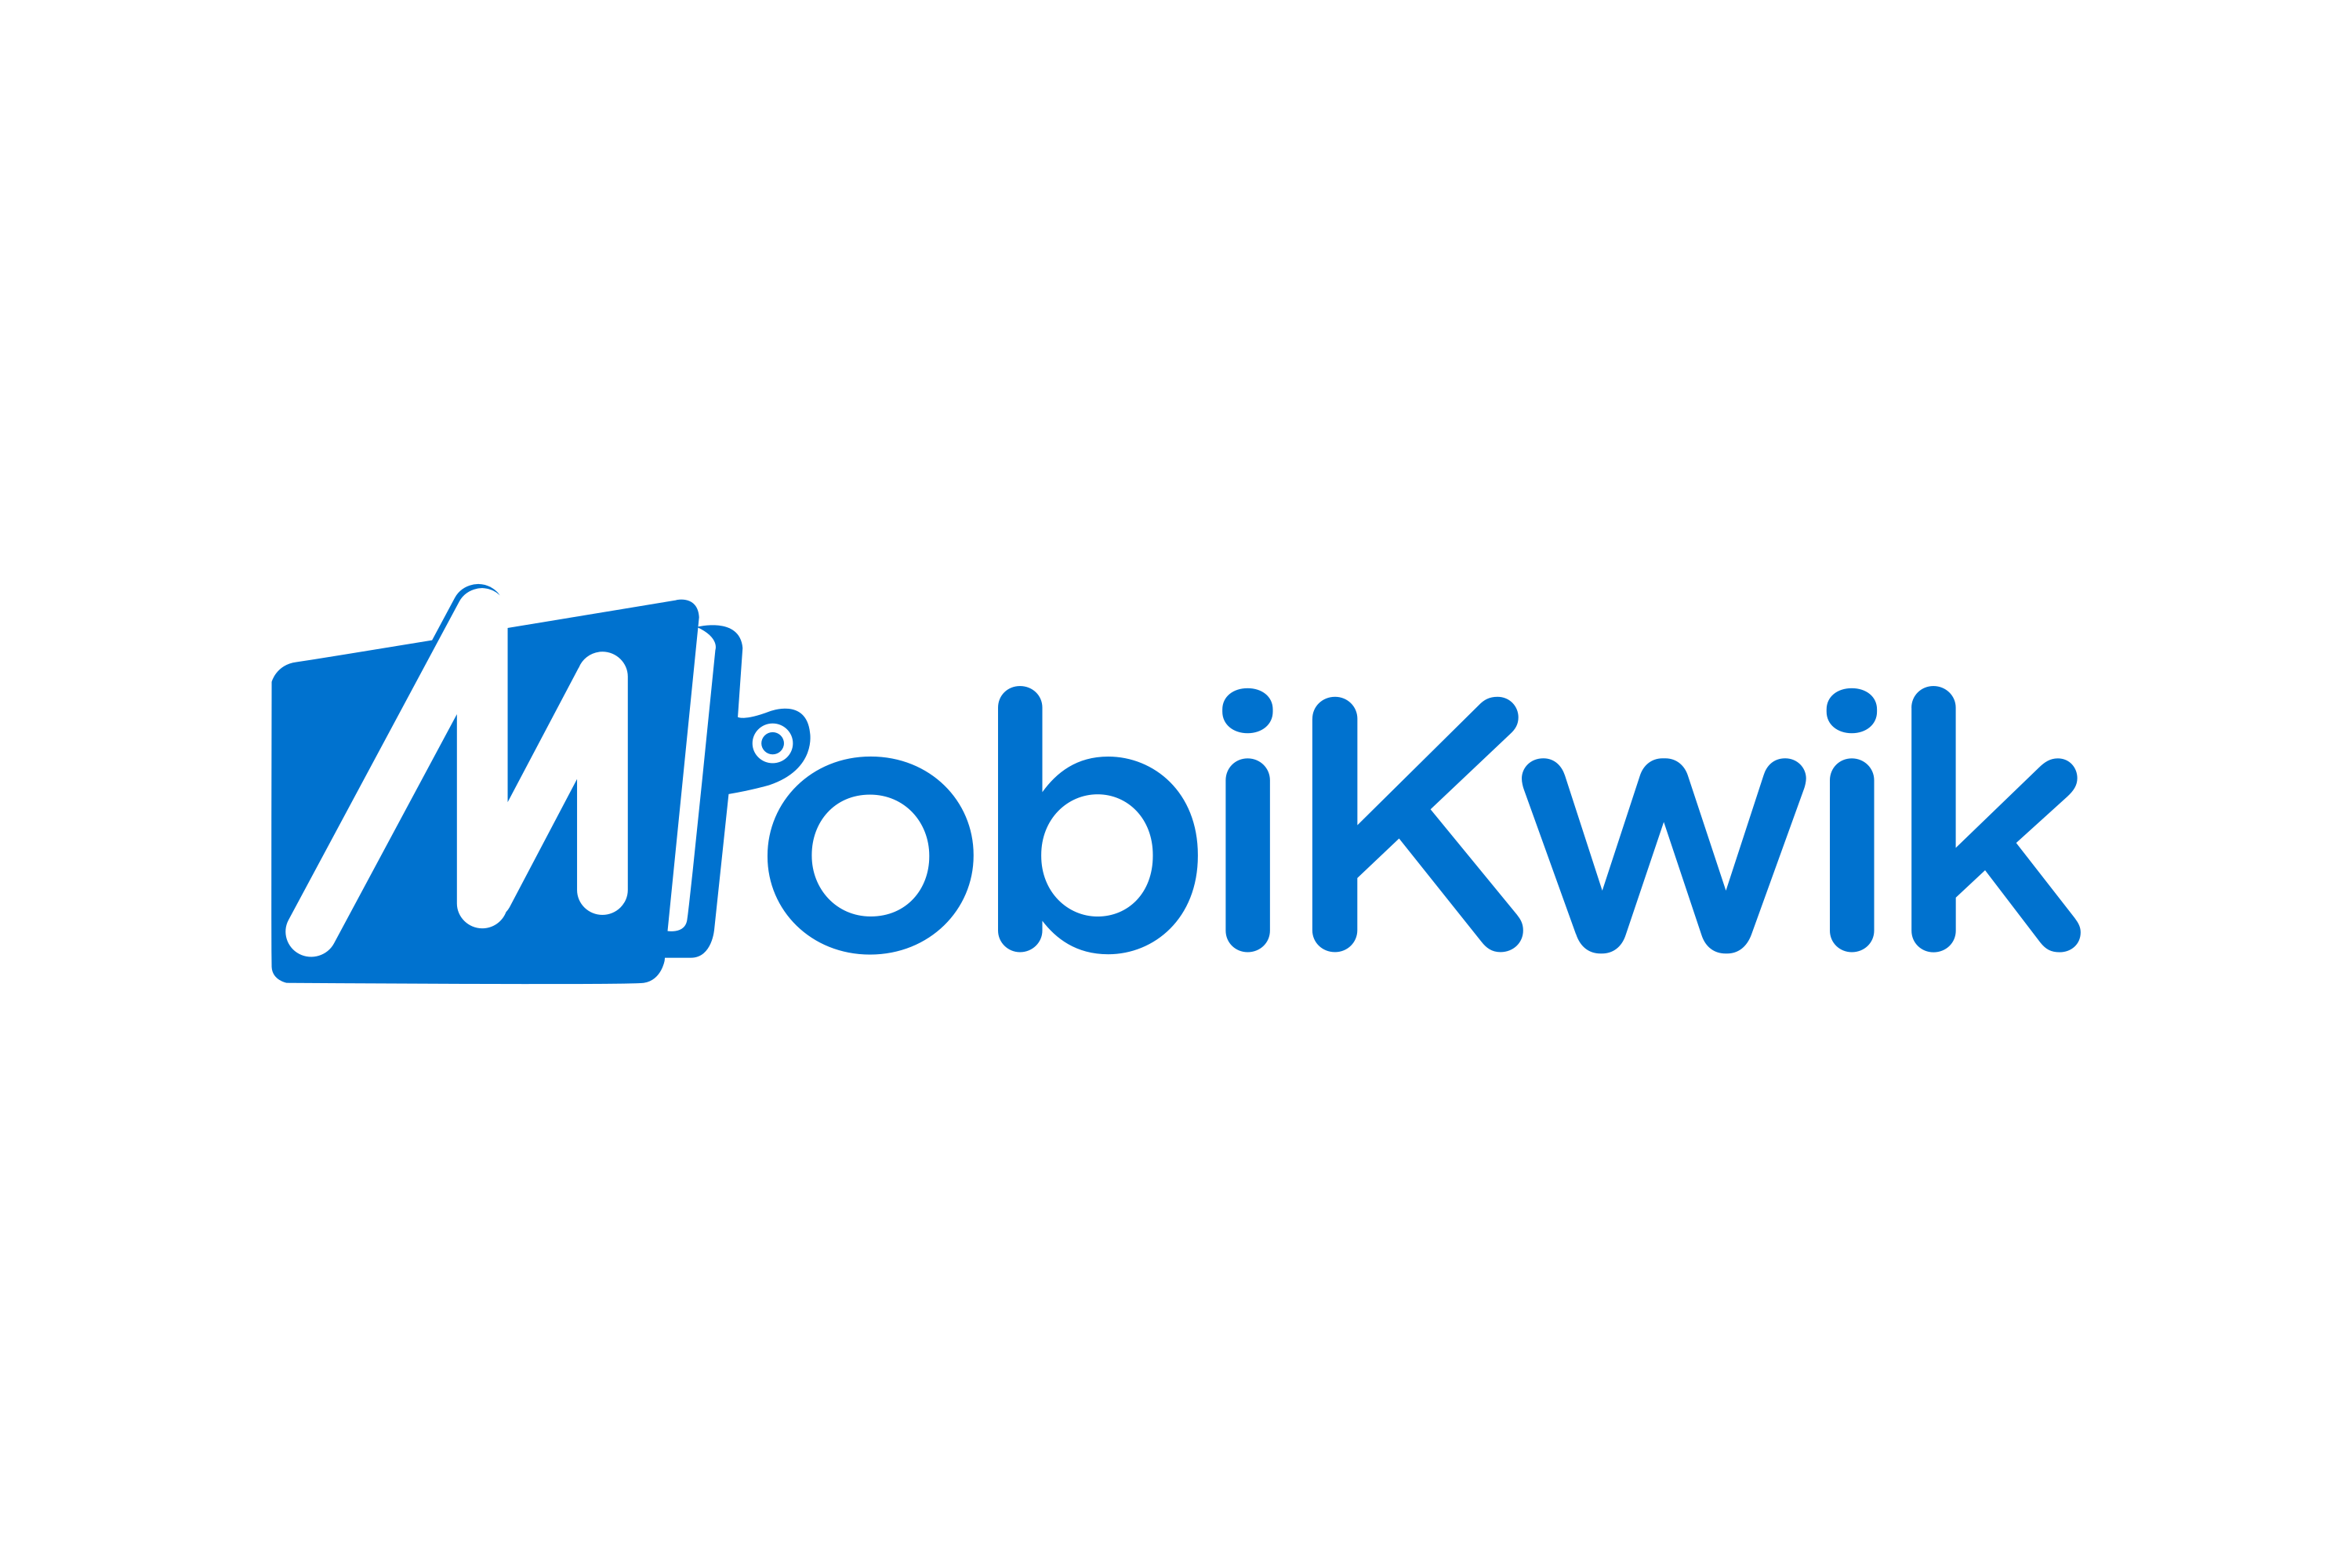 Download MobiKwik Logo in SVG Vector or PNG File Format - Logo.wine